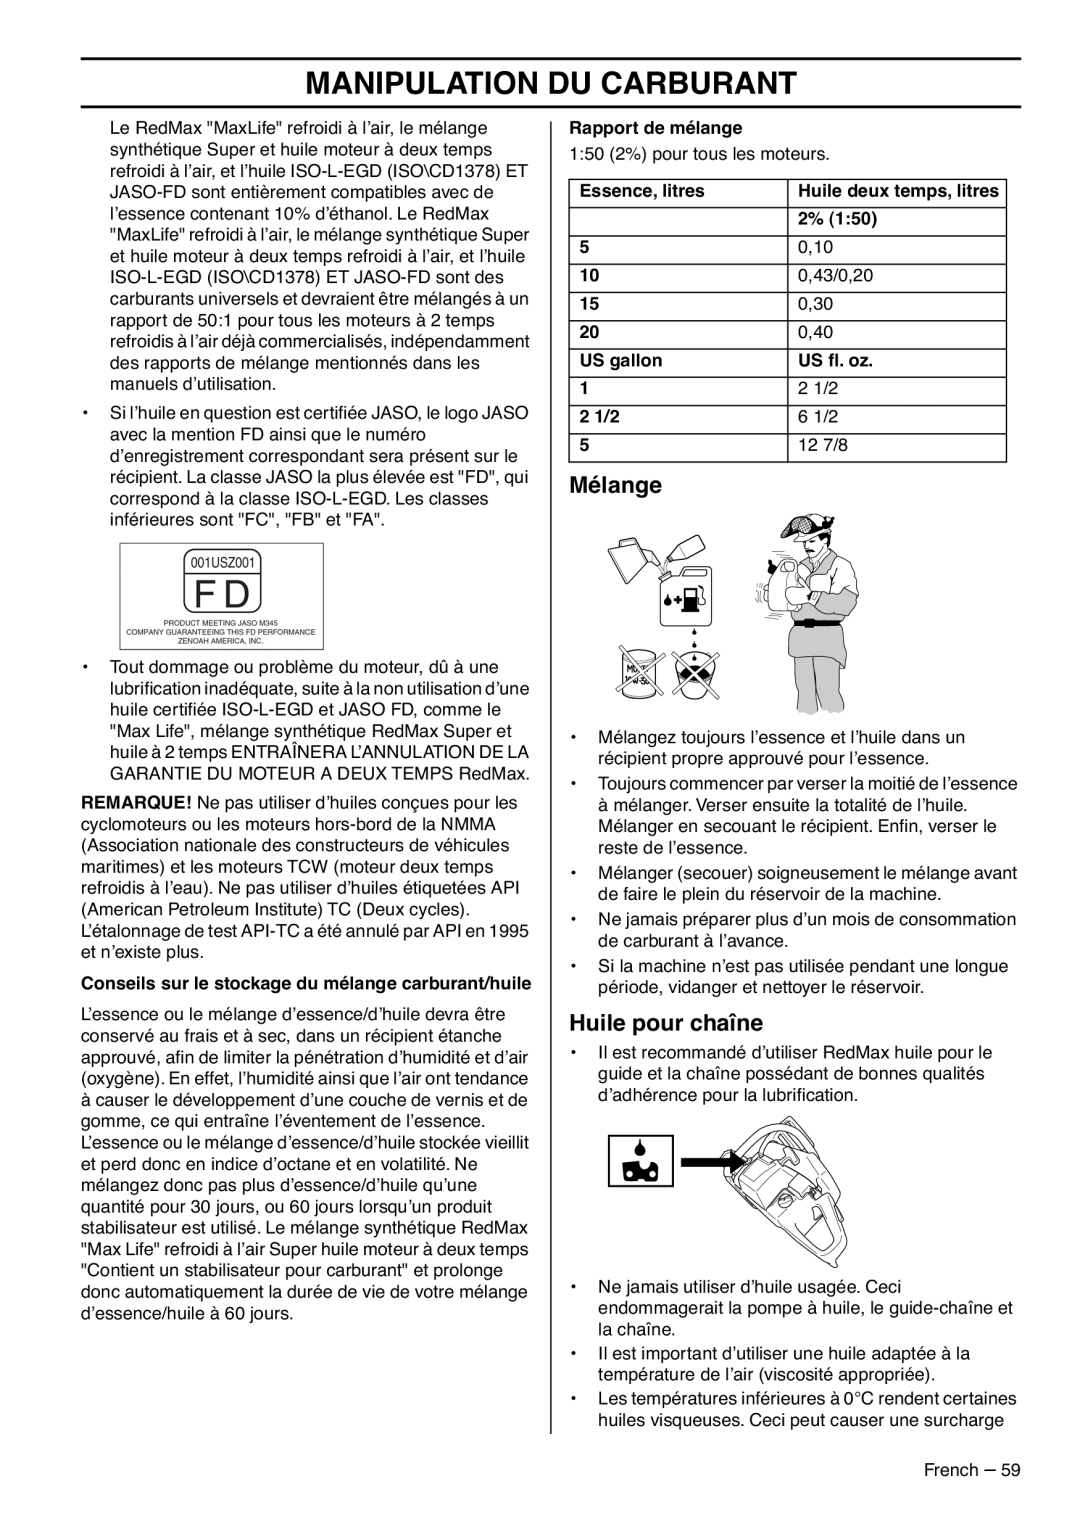 RedMax GZ7000 manual Mélange, Huile pour chaîne, Manipulation Du Carburant 